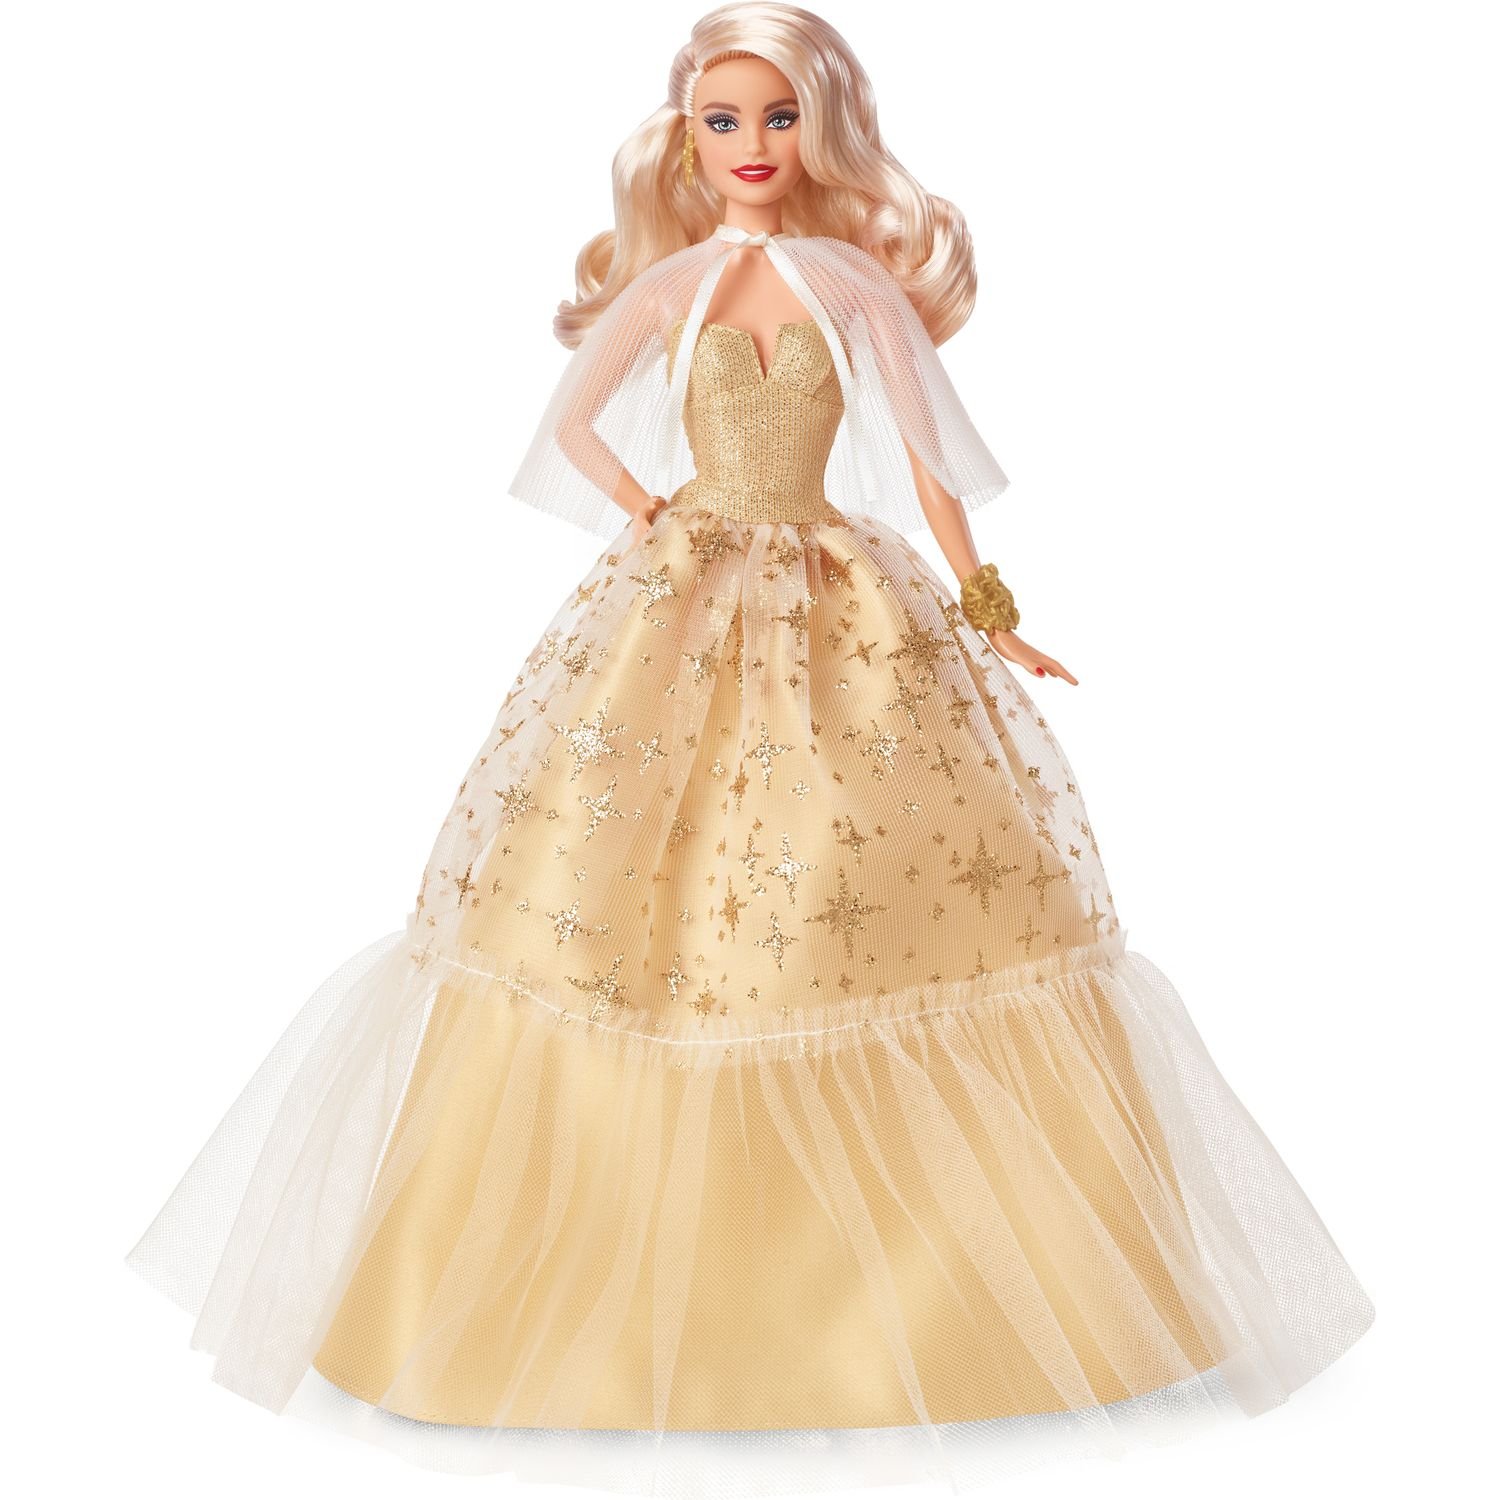 Коллекционная кукла Barbie Праздничная в роскошном золотистом платье, 30 см (HJX04) - фото 1